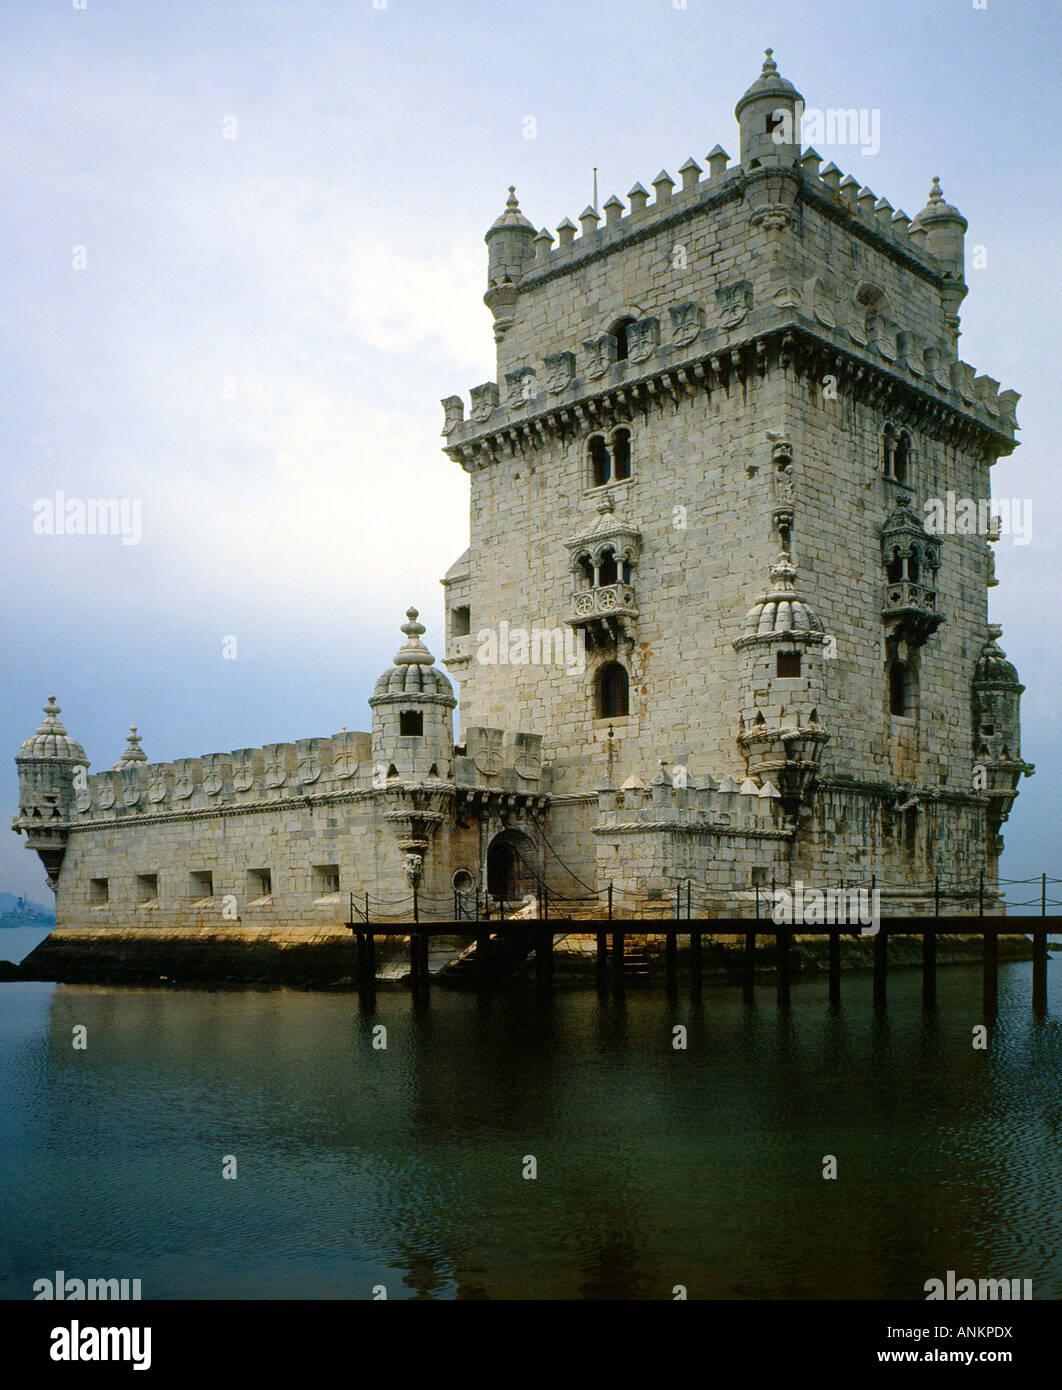 La torre di Belem sul fiume Tago, simbolo di Lisbona. Foto Stock